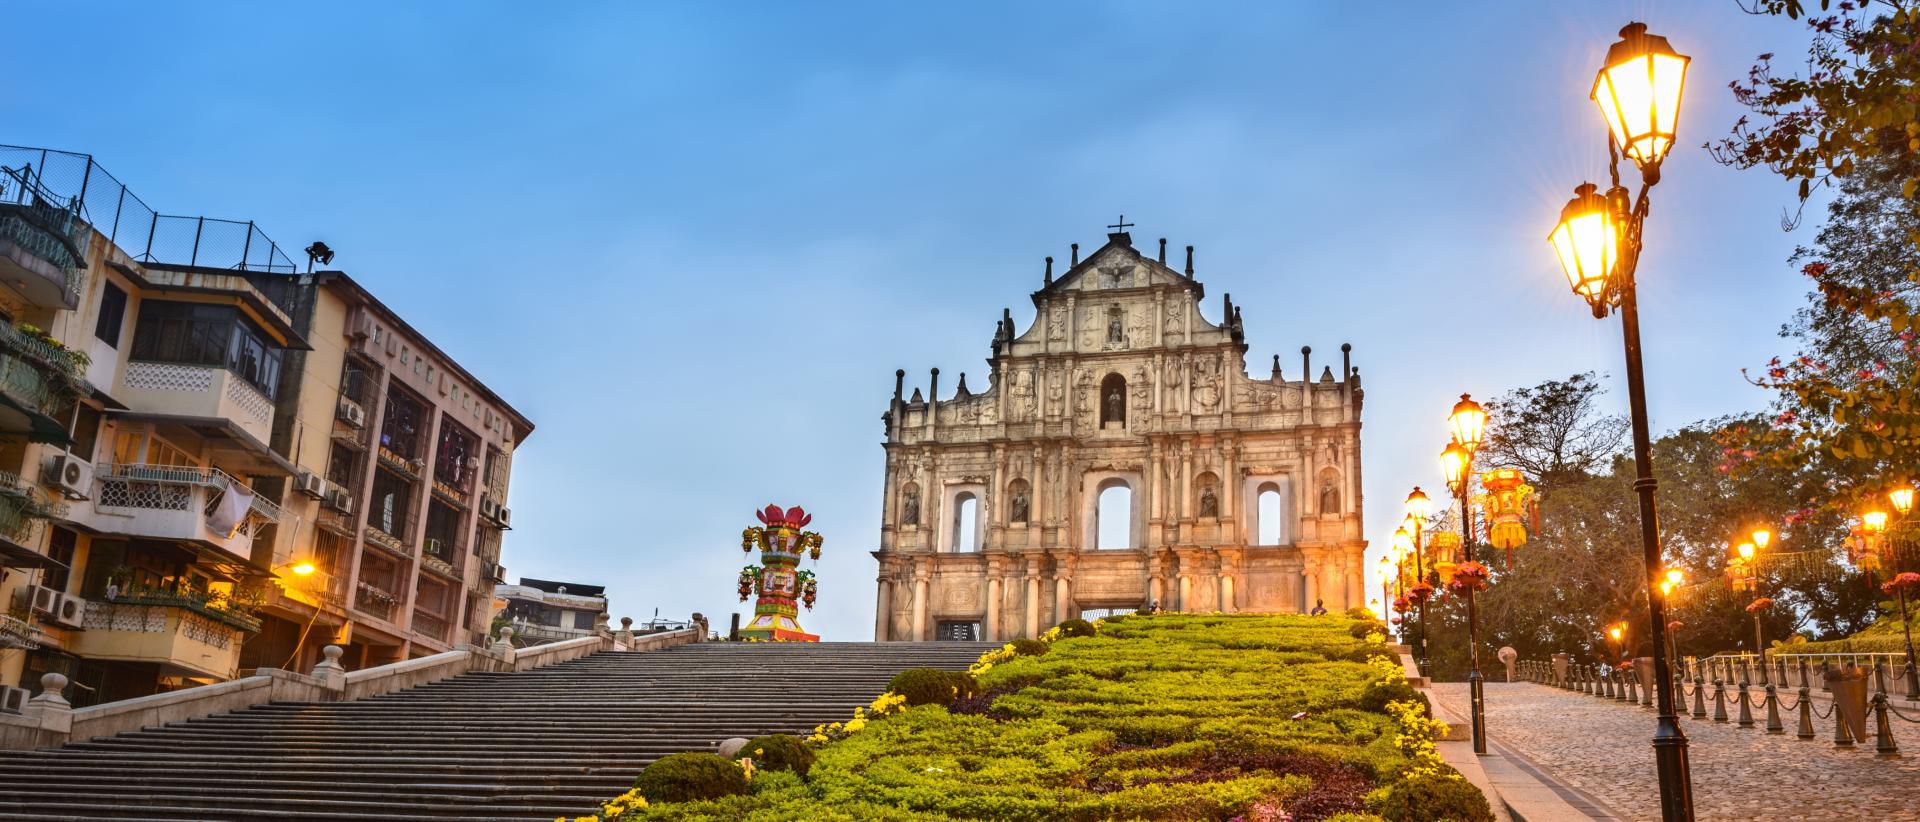 Tempat Wisata Hongkong dan Macau - Ruins of St. Paul's Church